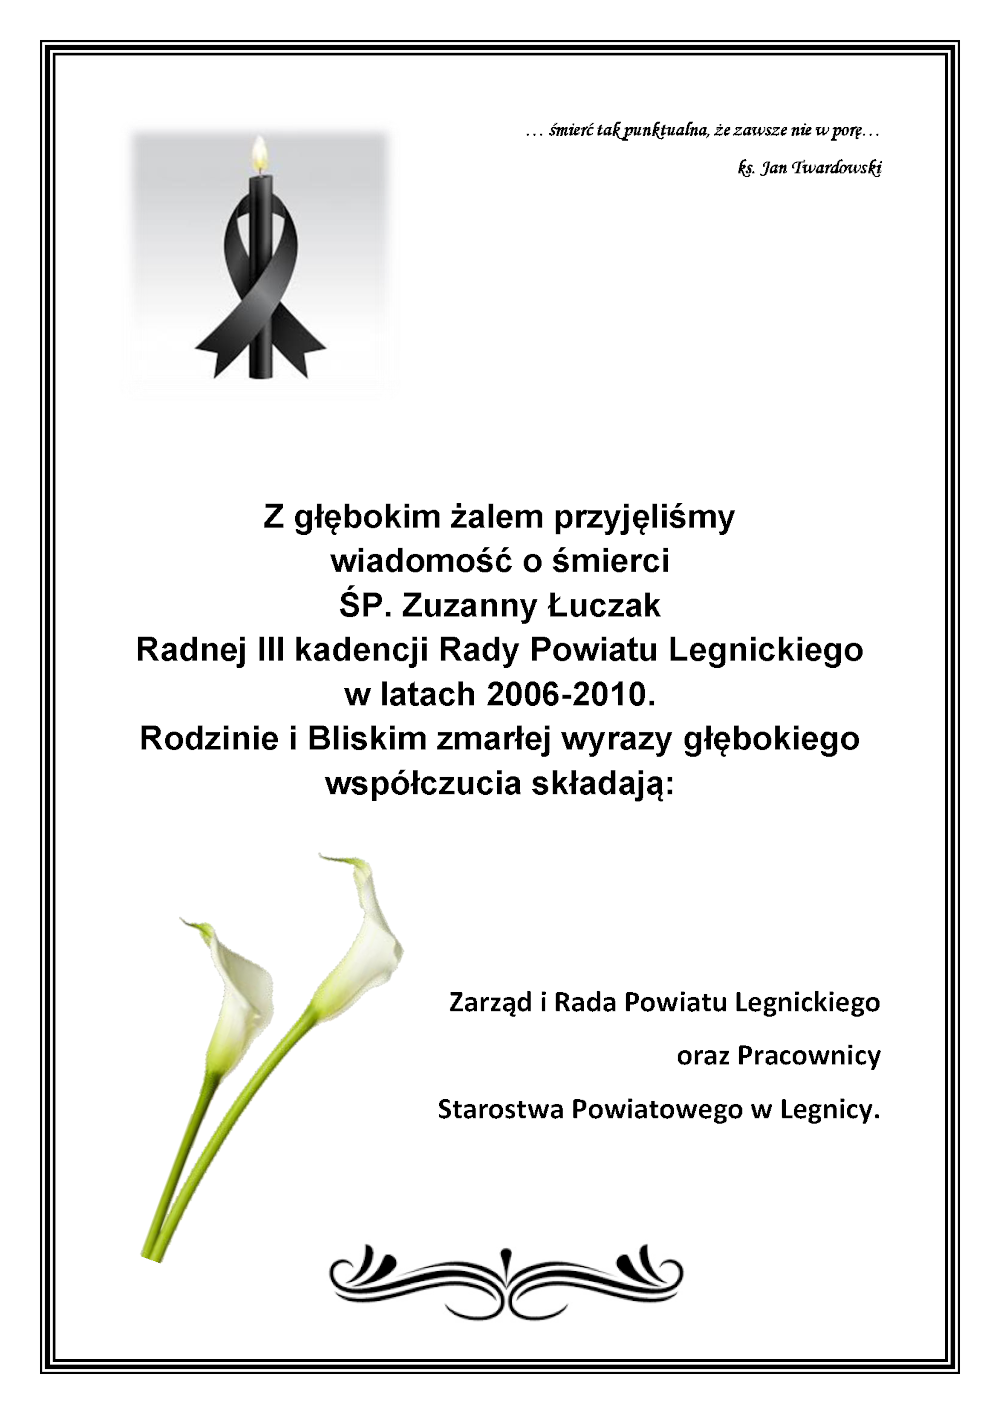 Kondolencje: ŚP. Zuzanny Łuczak Radnej III kadencji Rady Powiatu Legnickiego w latach 2006-2010